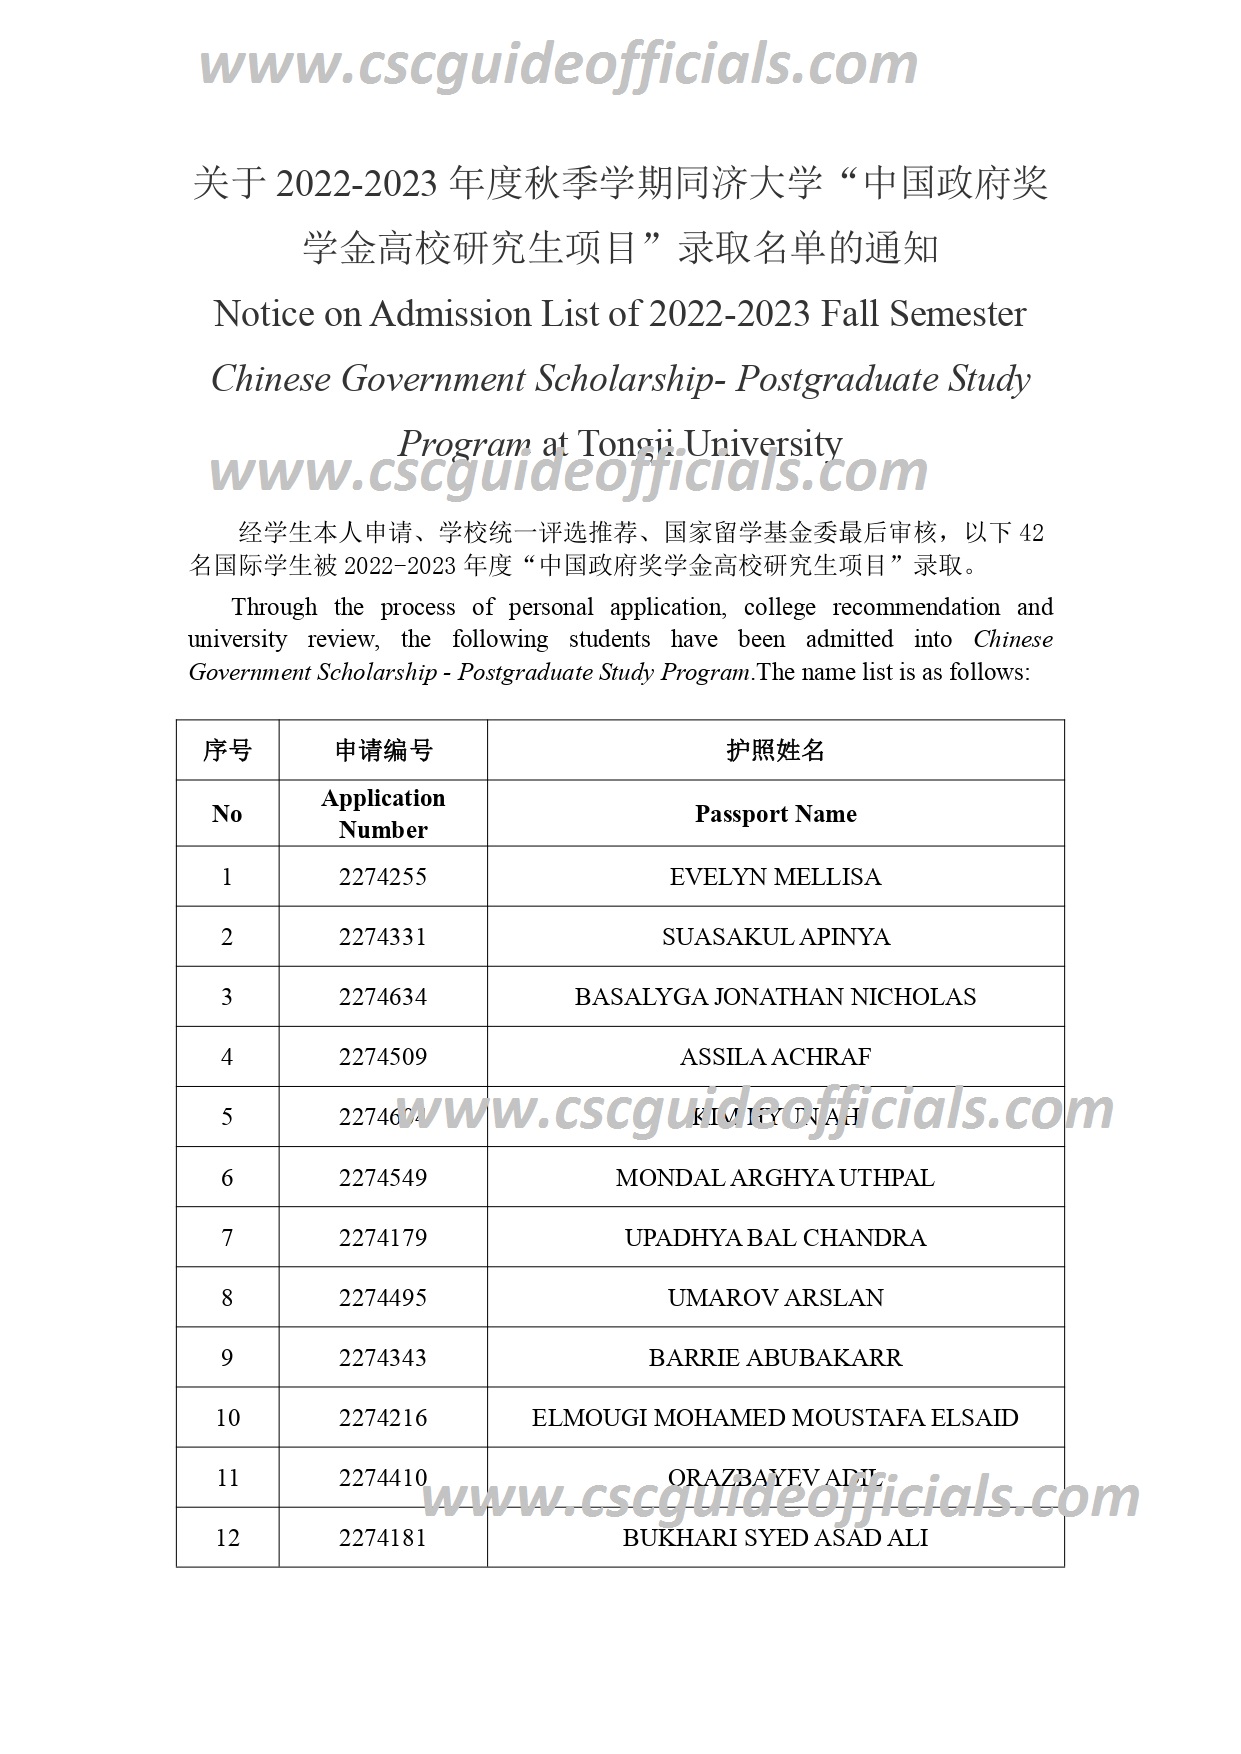 tongji university csc scholarship result 2022-2023 (2)